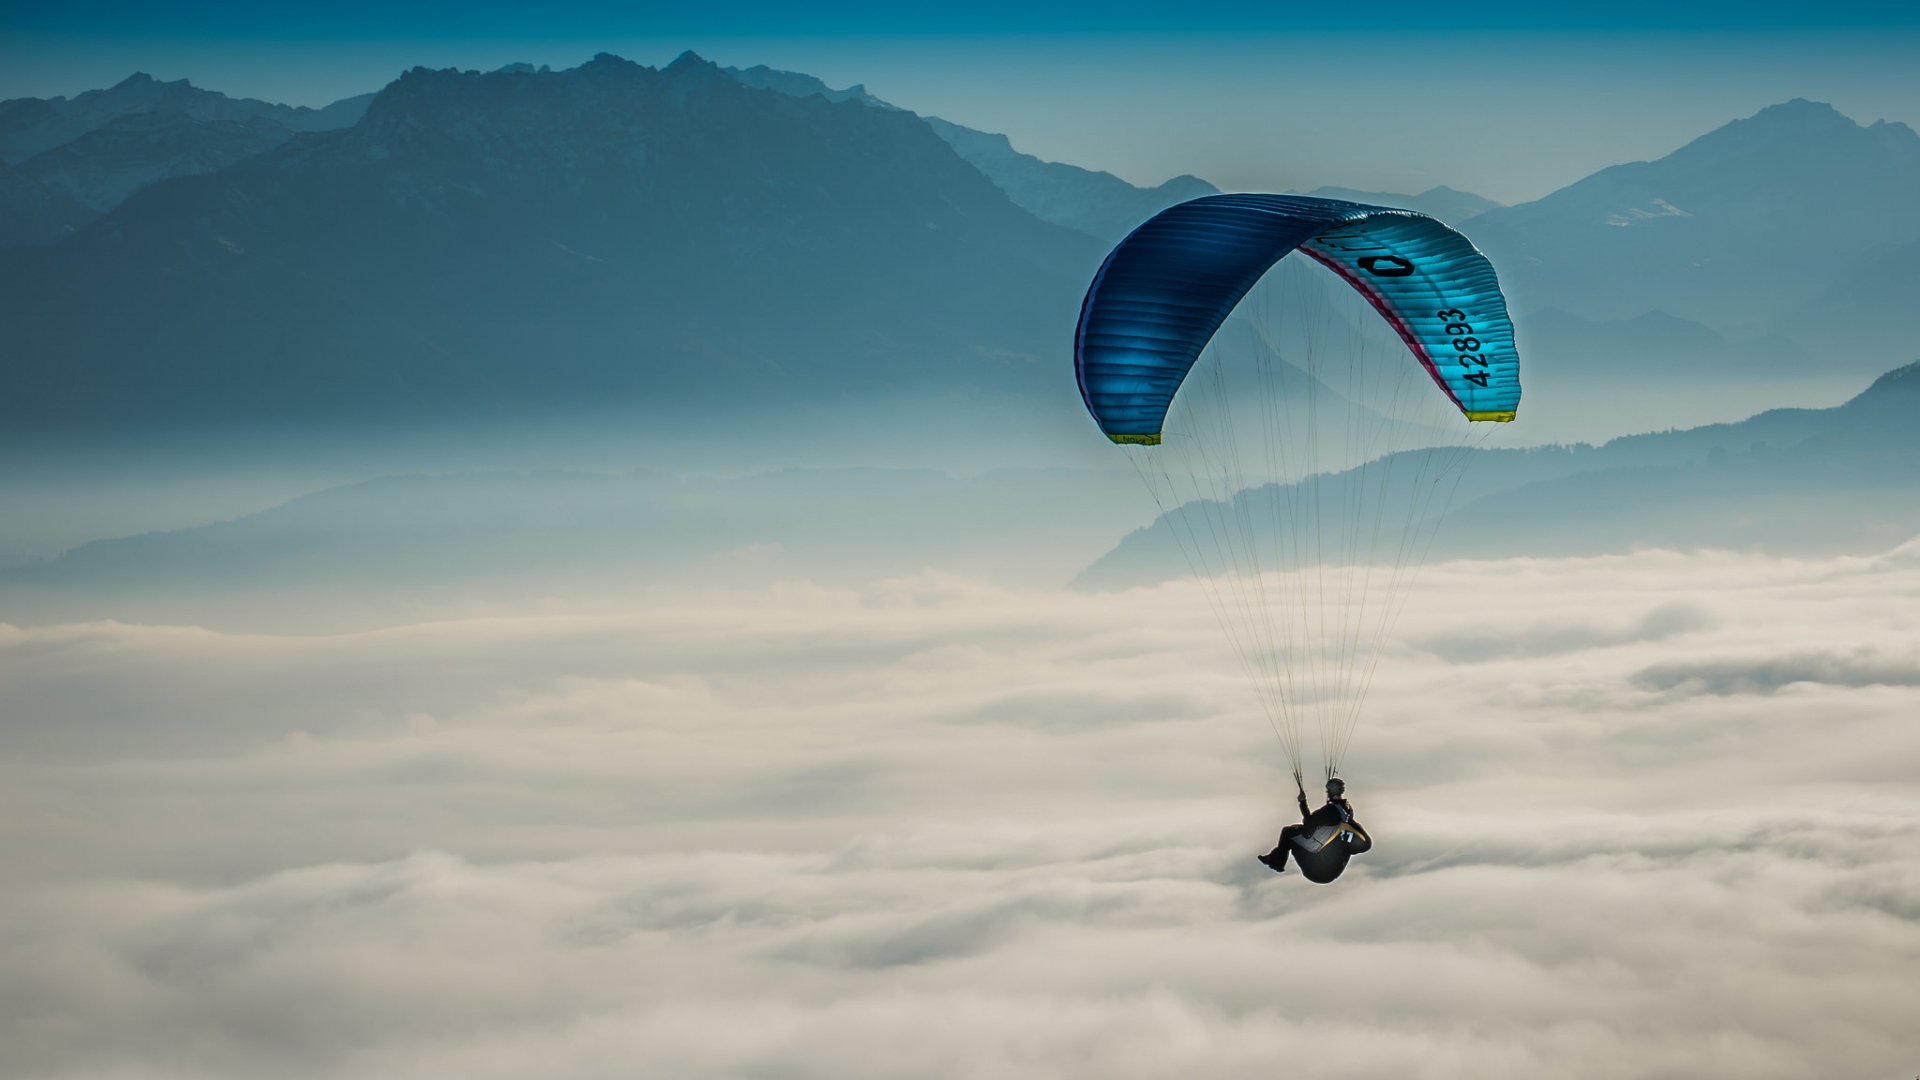 paragliding, sports, cloud